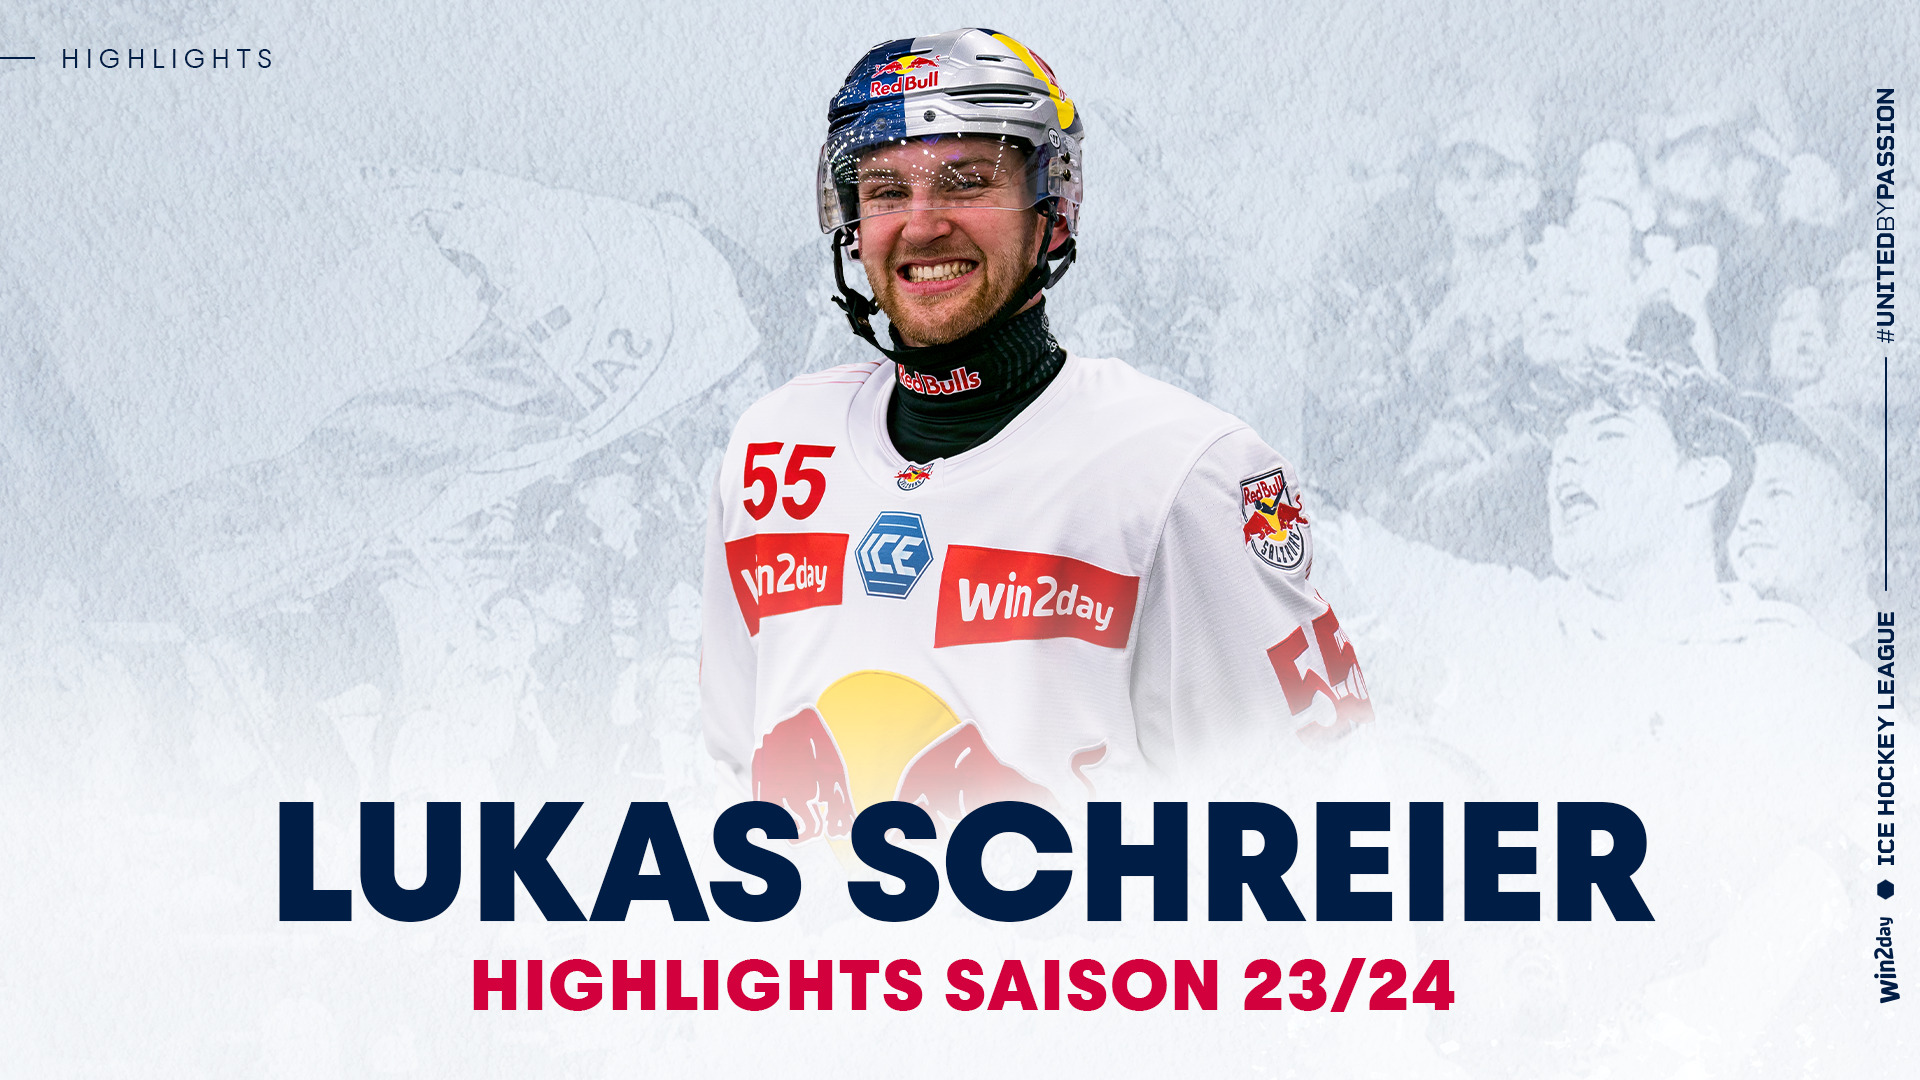 Lukas Schreier: Die Highlights aus der Saison 23/24